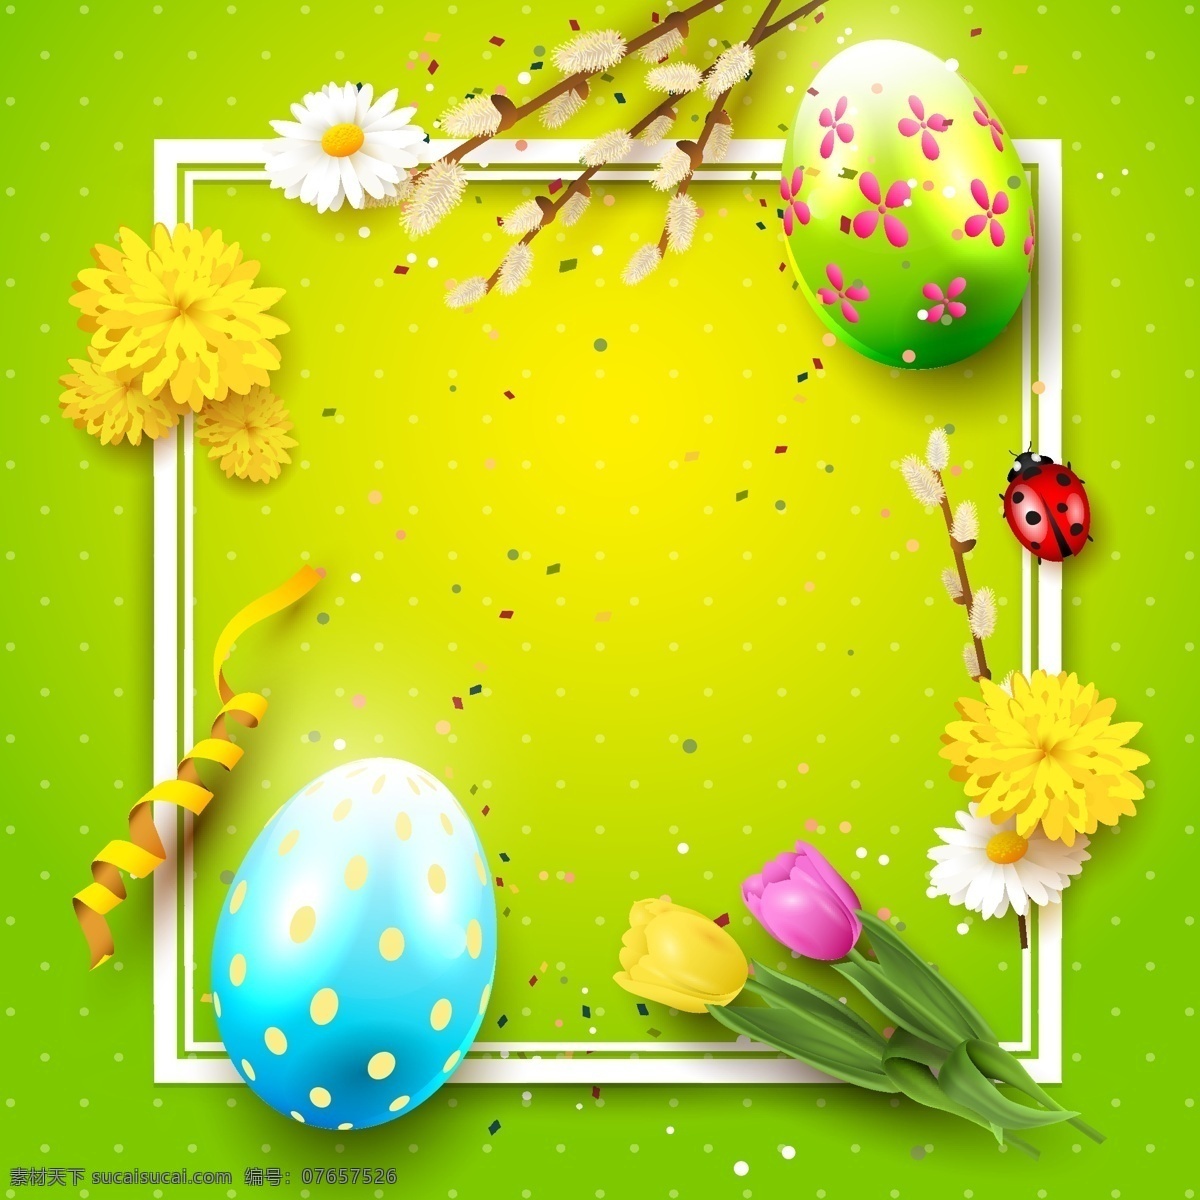 彩蛋 花卉 告示 板 矢量 设计素材 绿色 背景 菊花 纸张 复古 俯拍 复活节 卡通 矢量素材 鸡蛋 插画